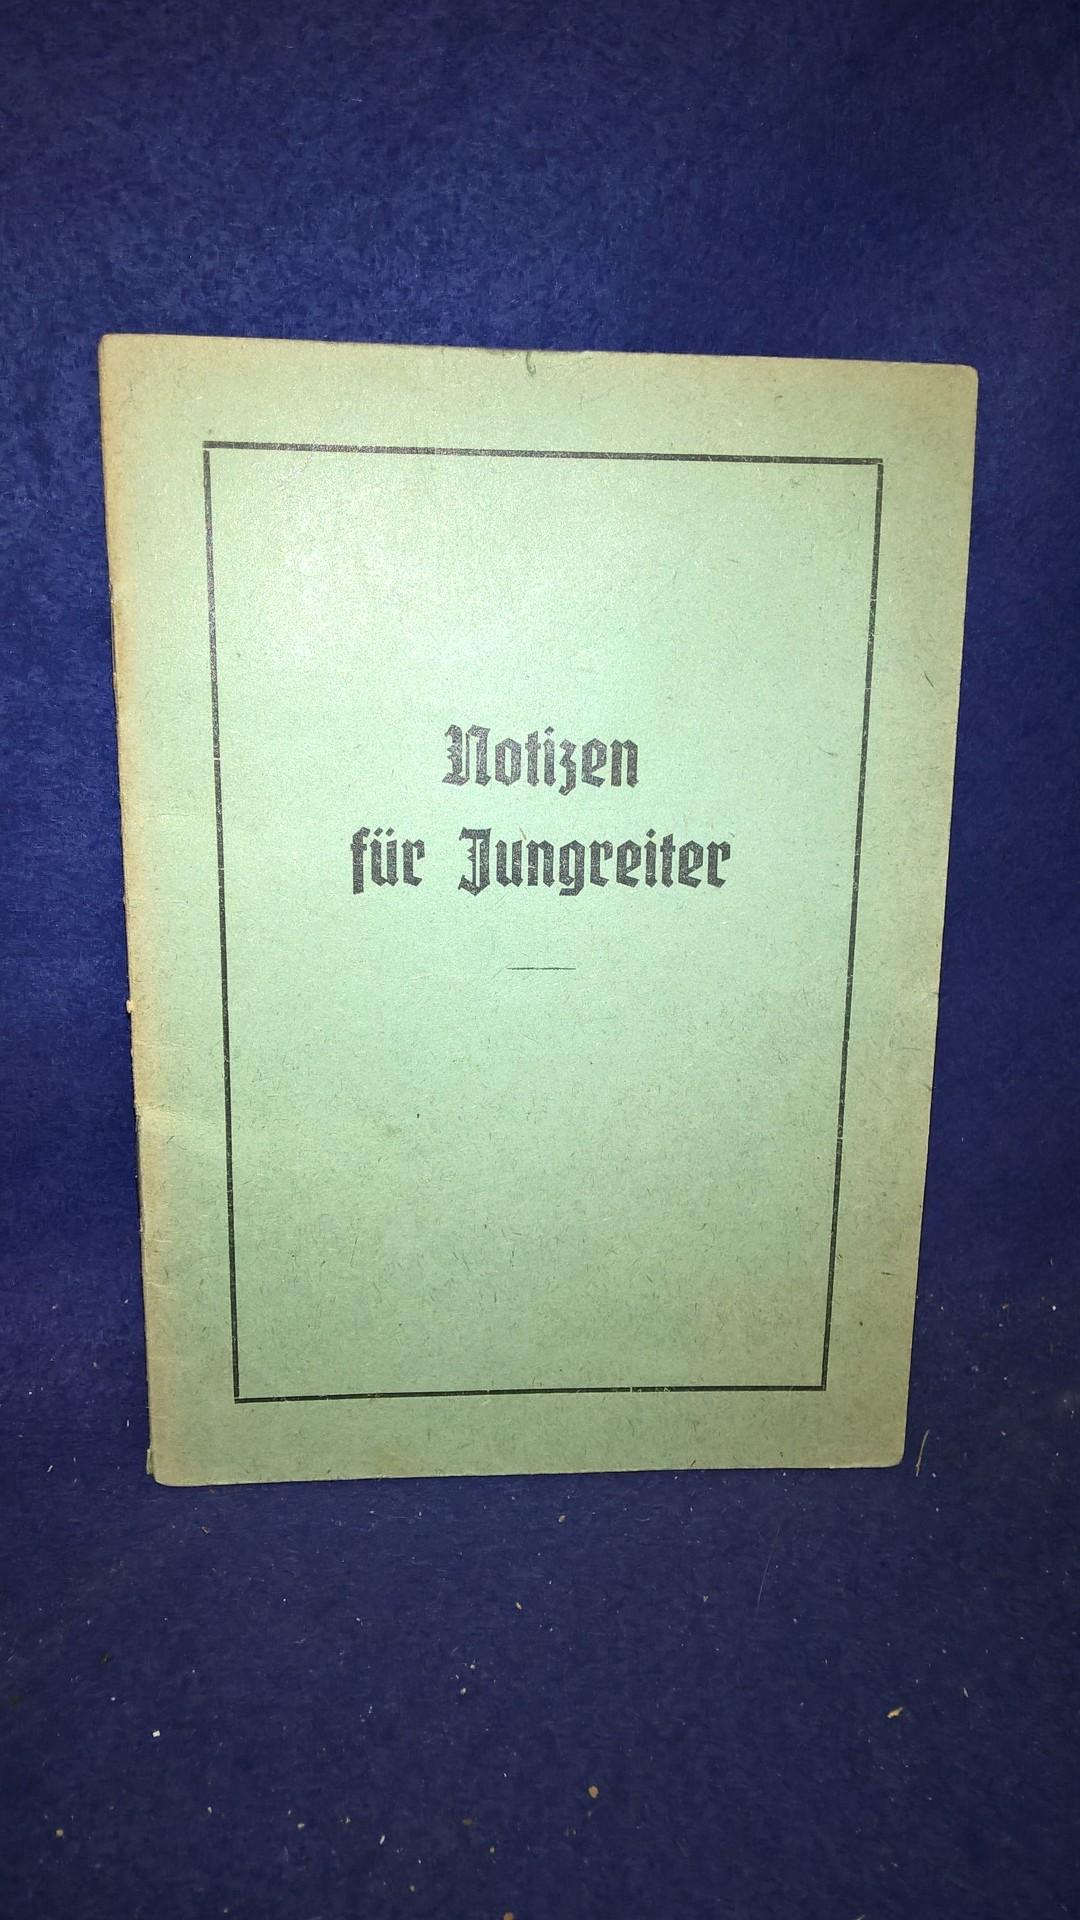 Notizen für Jungreiter. SA-Reitersturm 13/34.